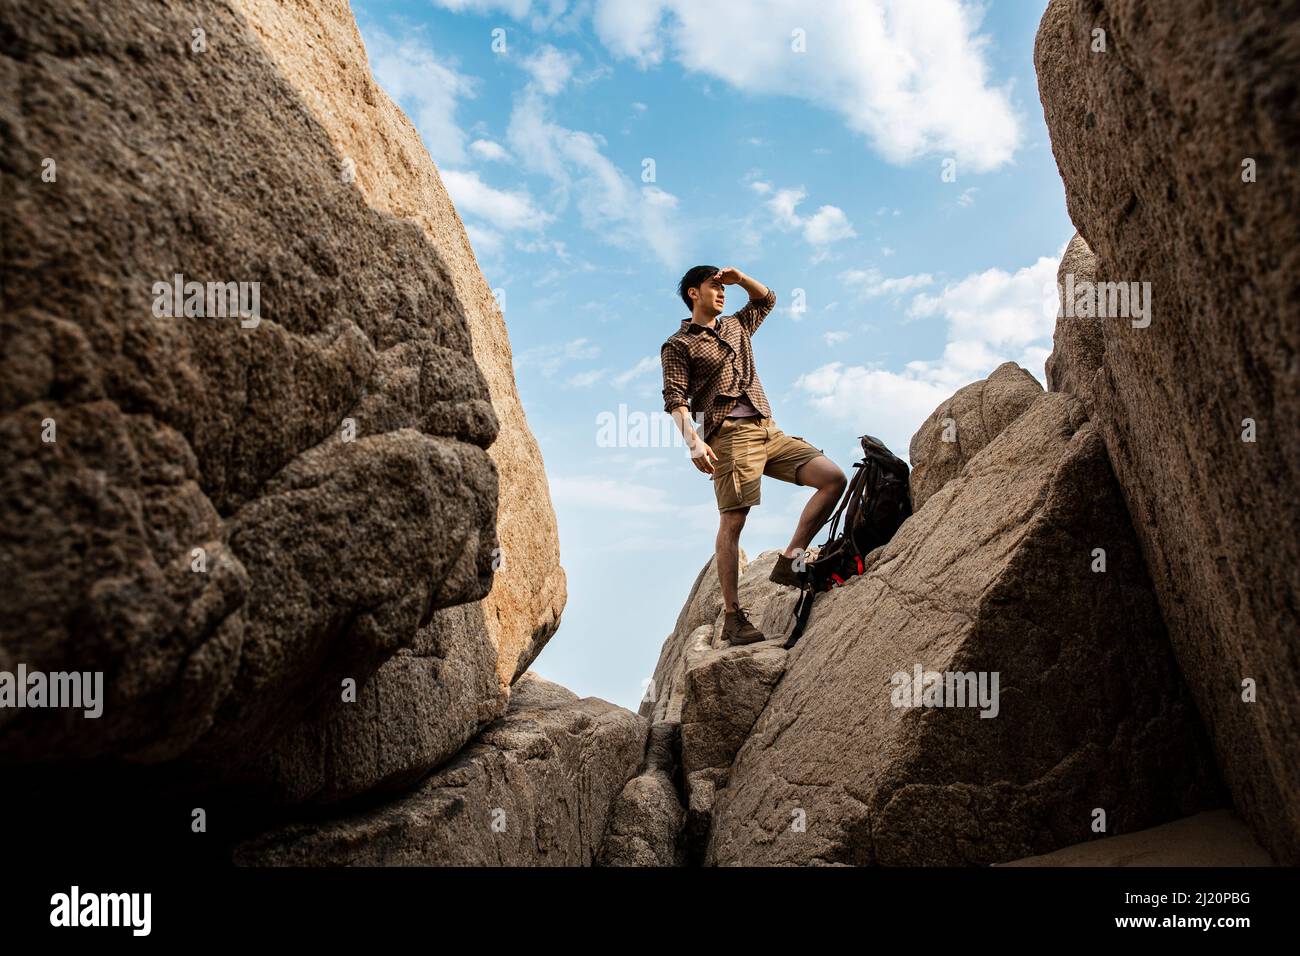 Junger männlicher Wanderer, der auf einem Strandfelsen steht und die Landschaft betrachtet - Stockfoto Stockfoto